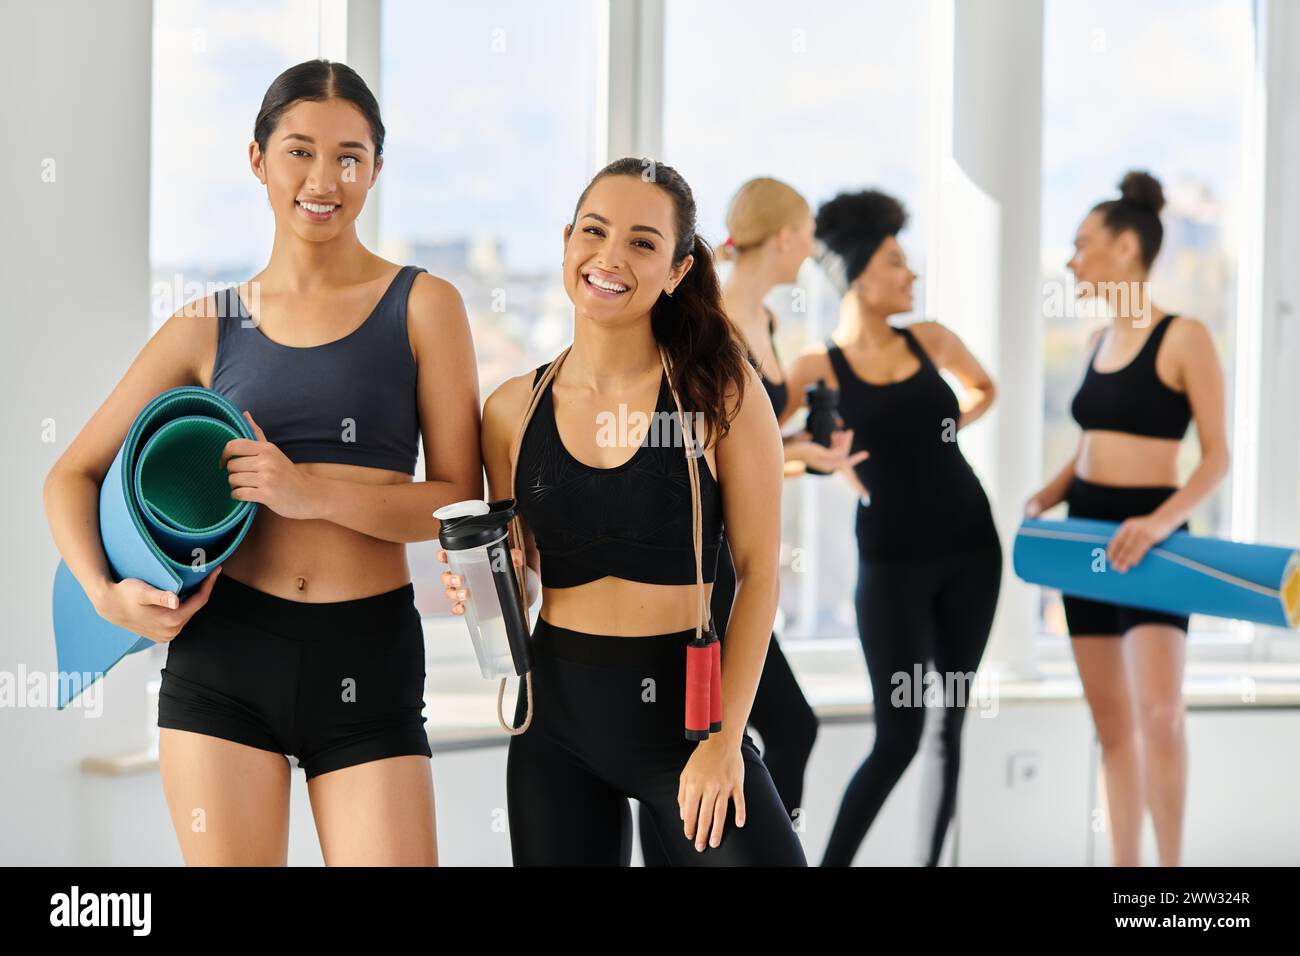 concentrez-vous sur des amies féminines diverses heureuses en tenue active souriant à la caméra après l'entraînement pilates Banque D'Images